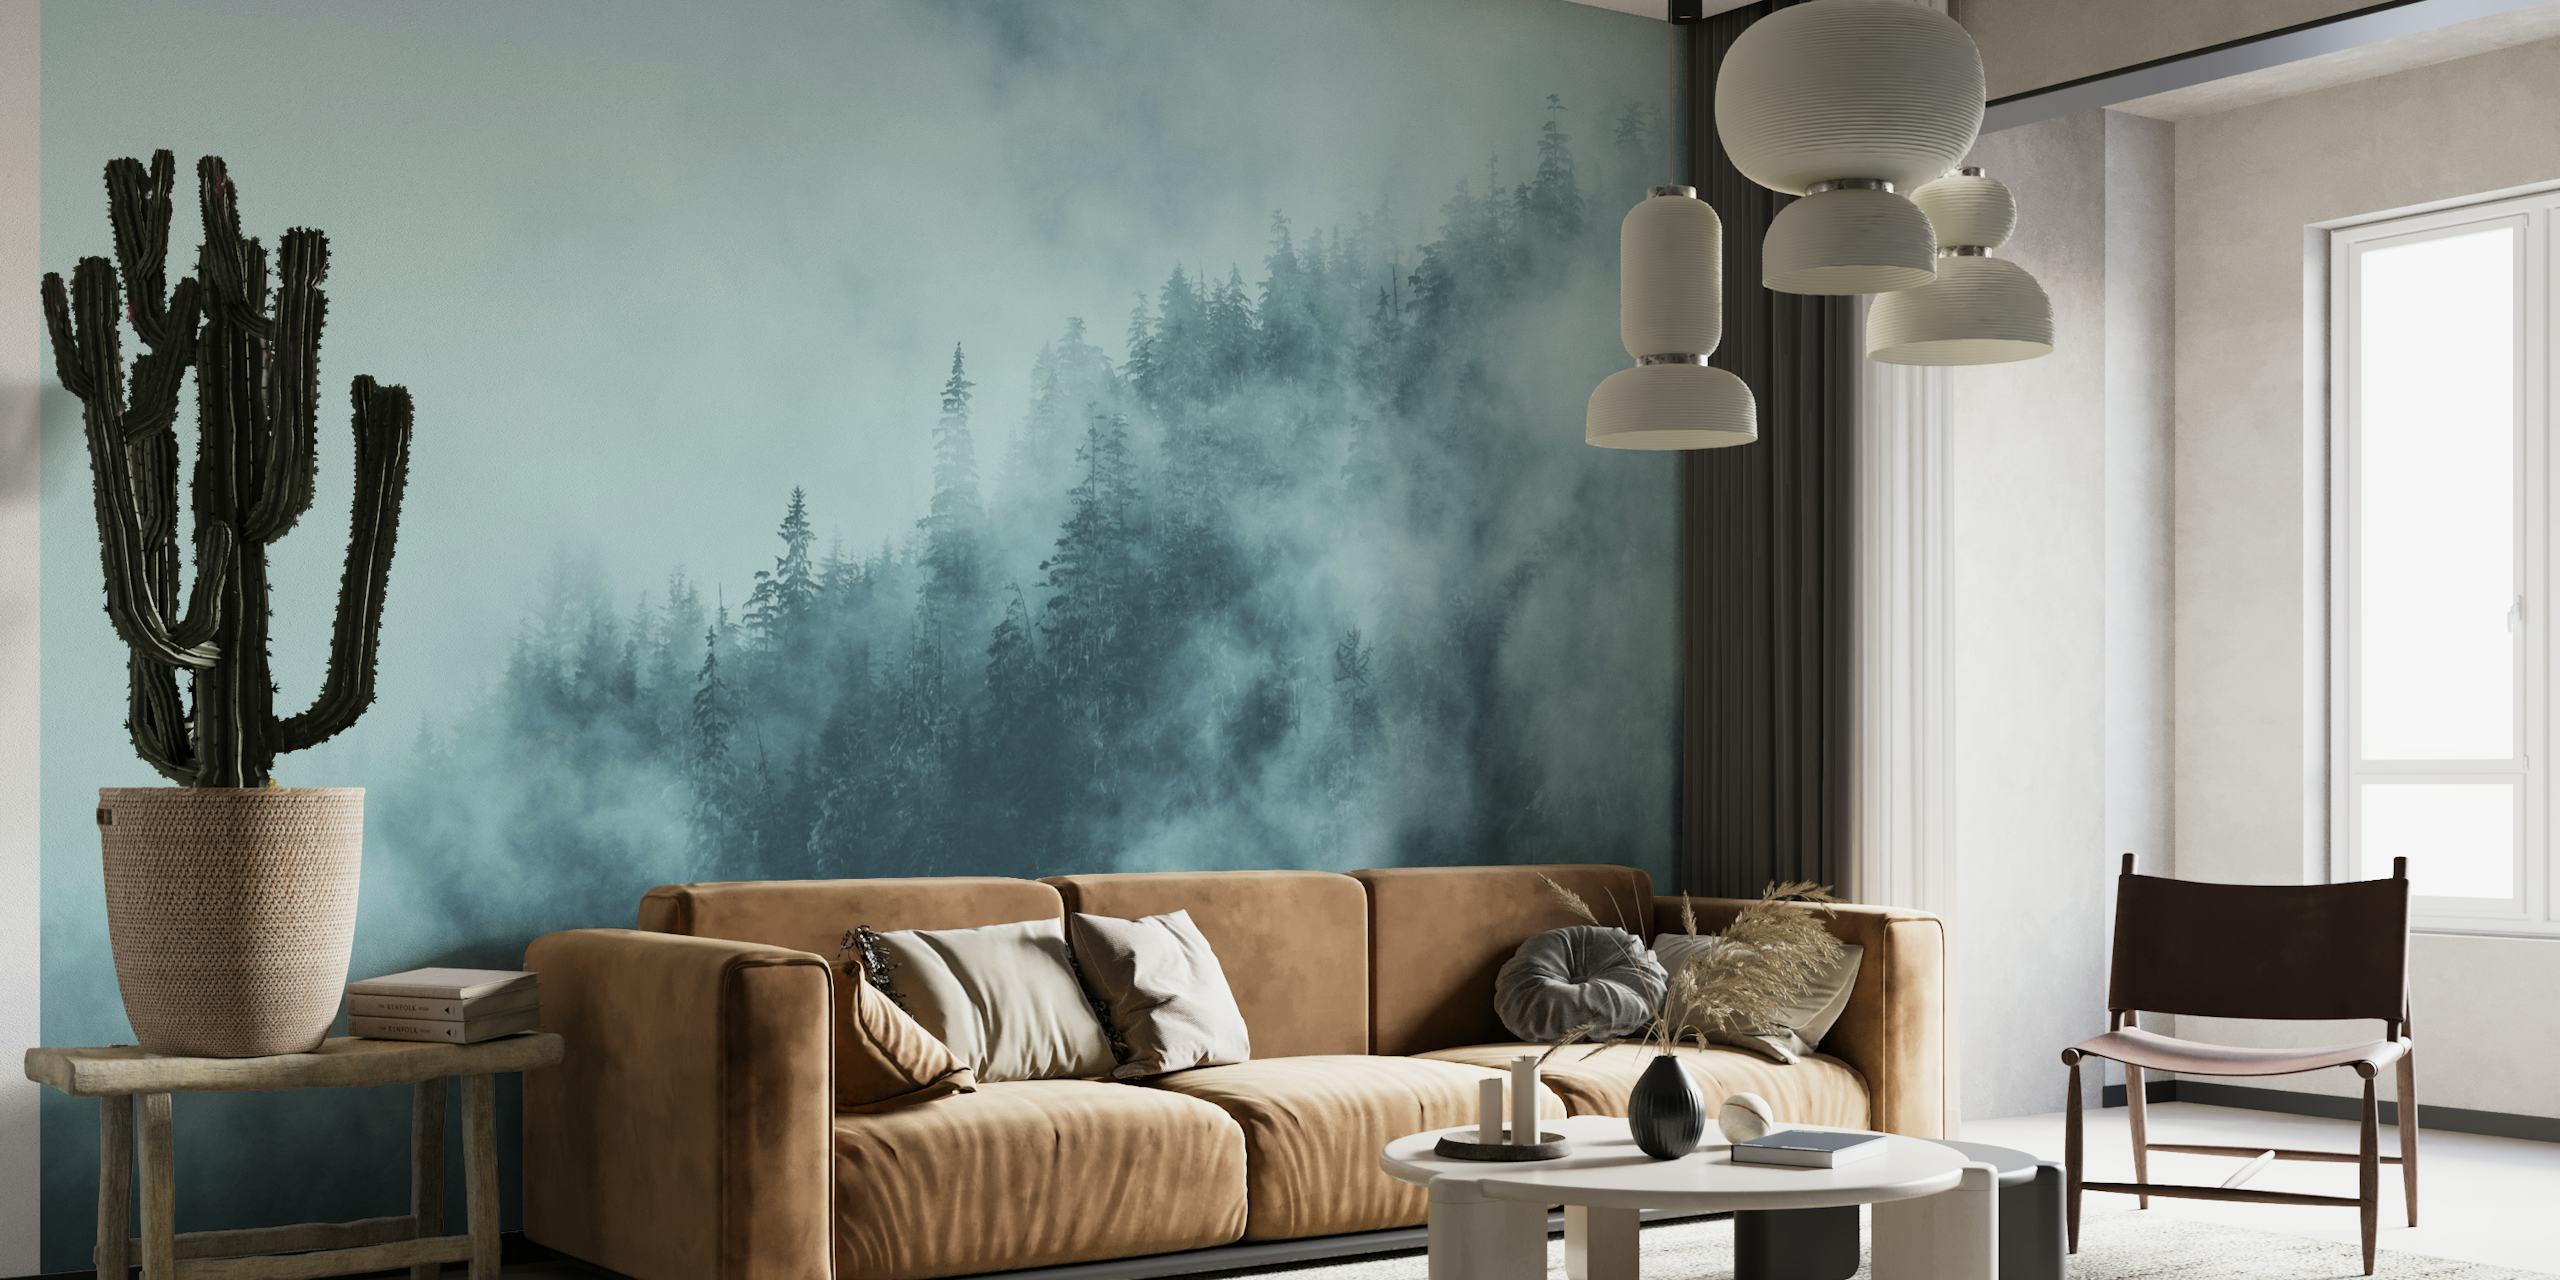 Mural de parede Foggy Forest Blue com silhuetas de árvores na neblina